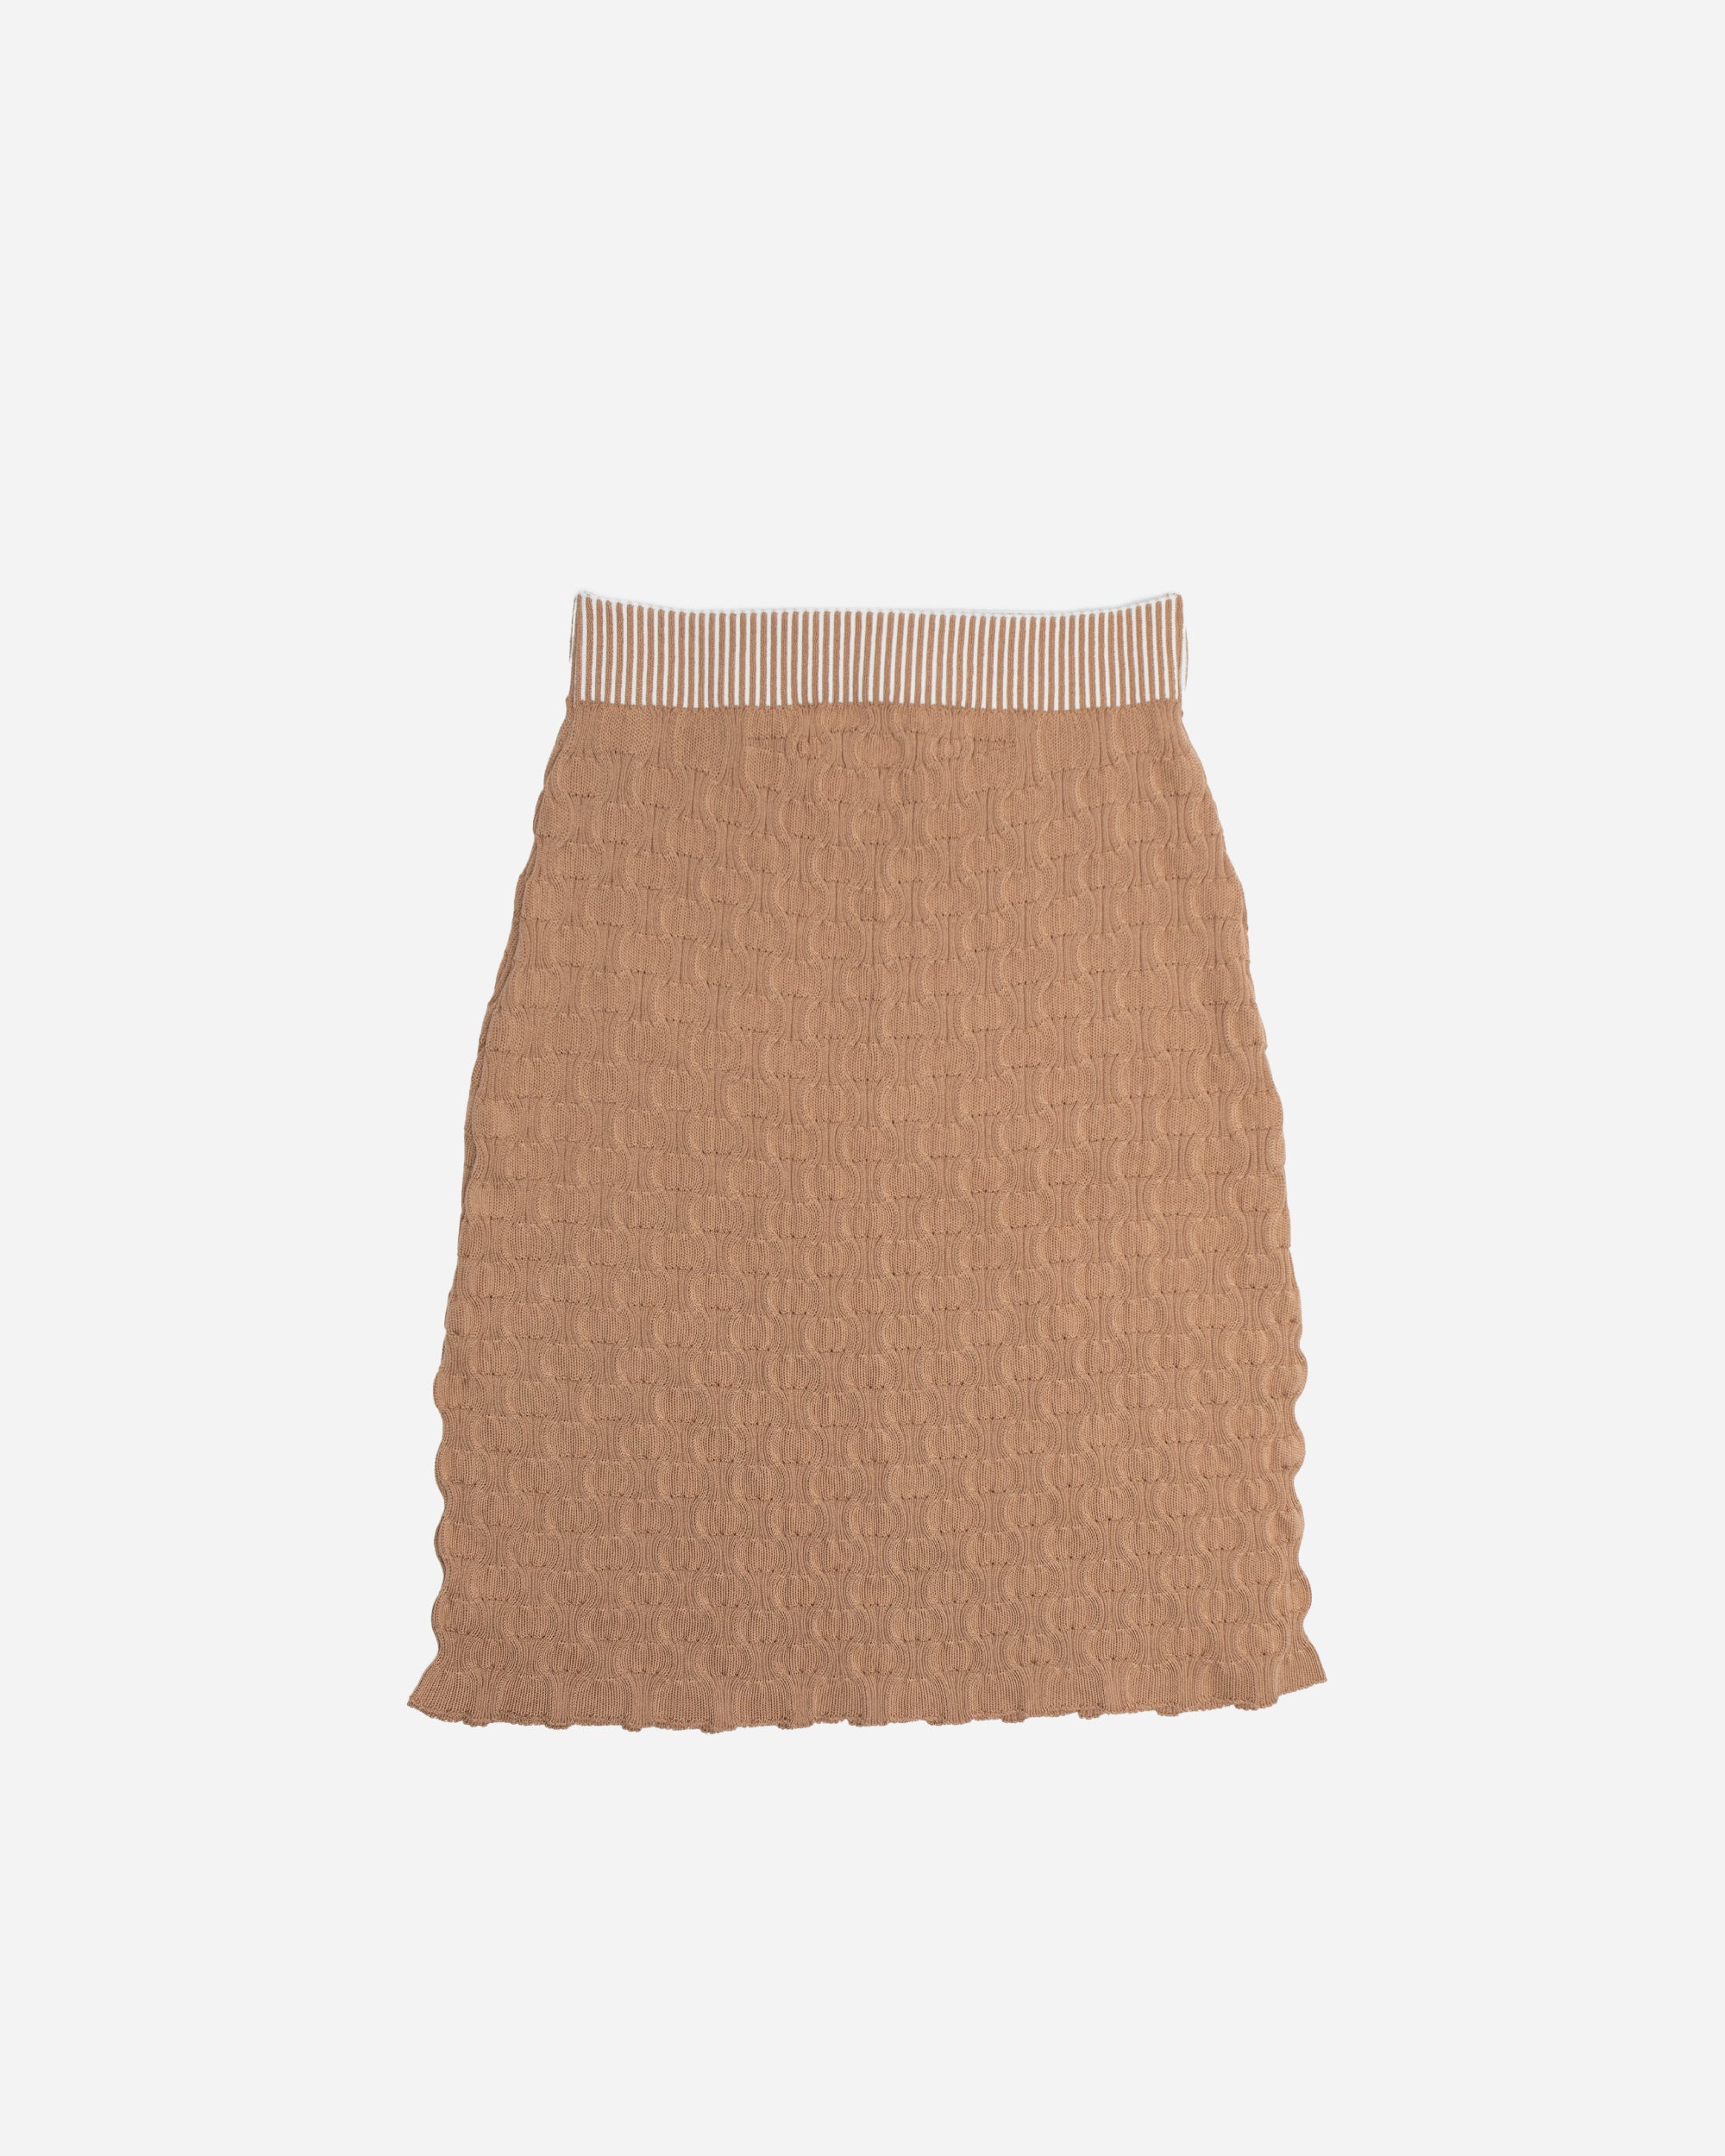 Nadia Wire Scallop Skirt Beige 770-beige